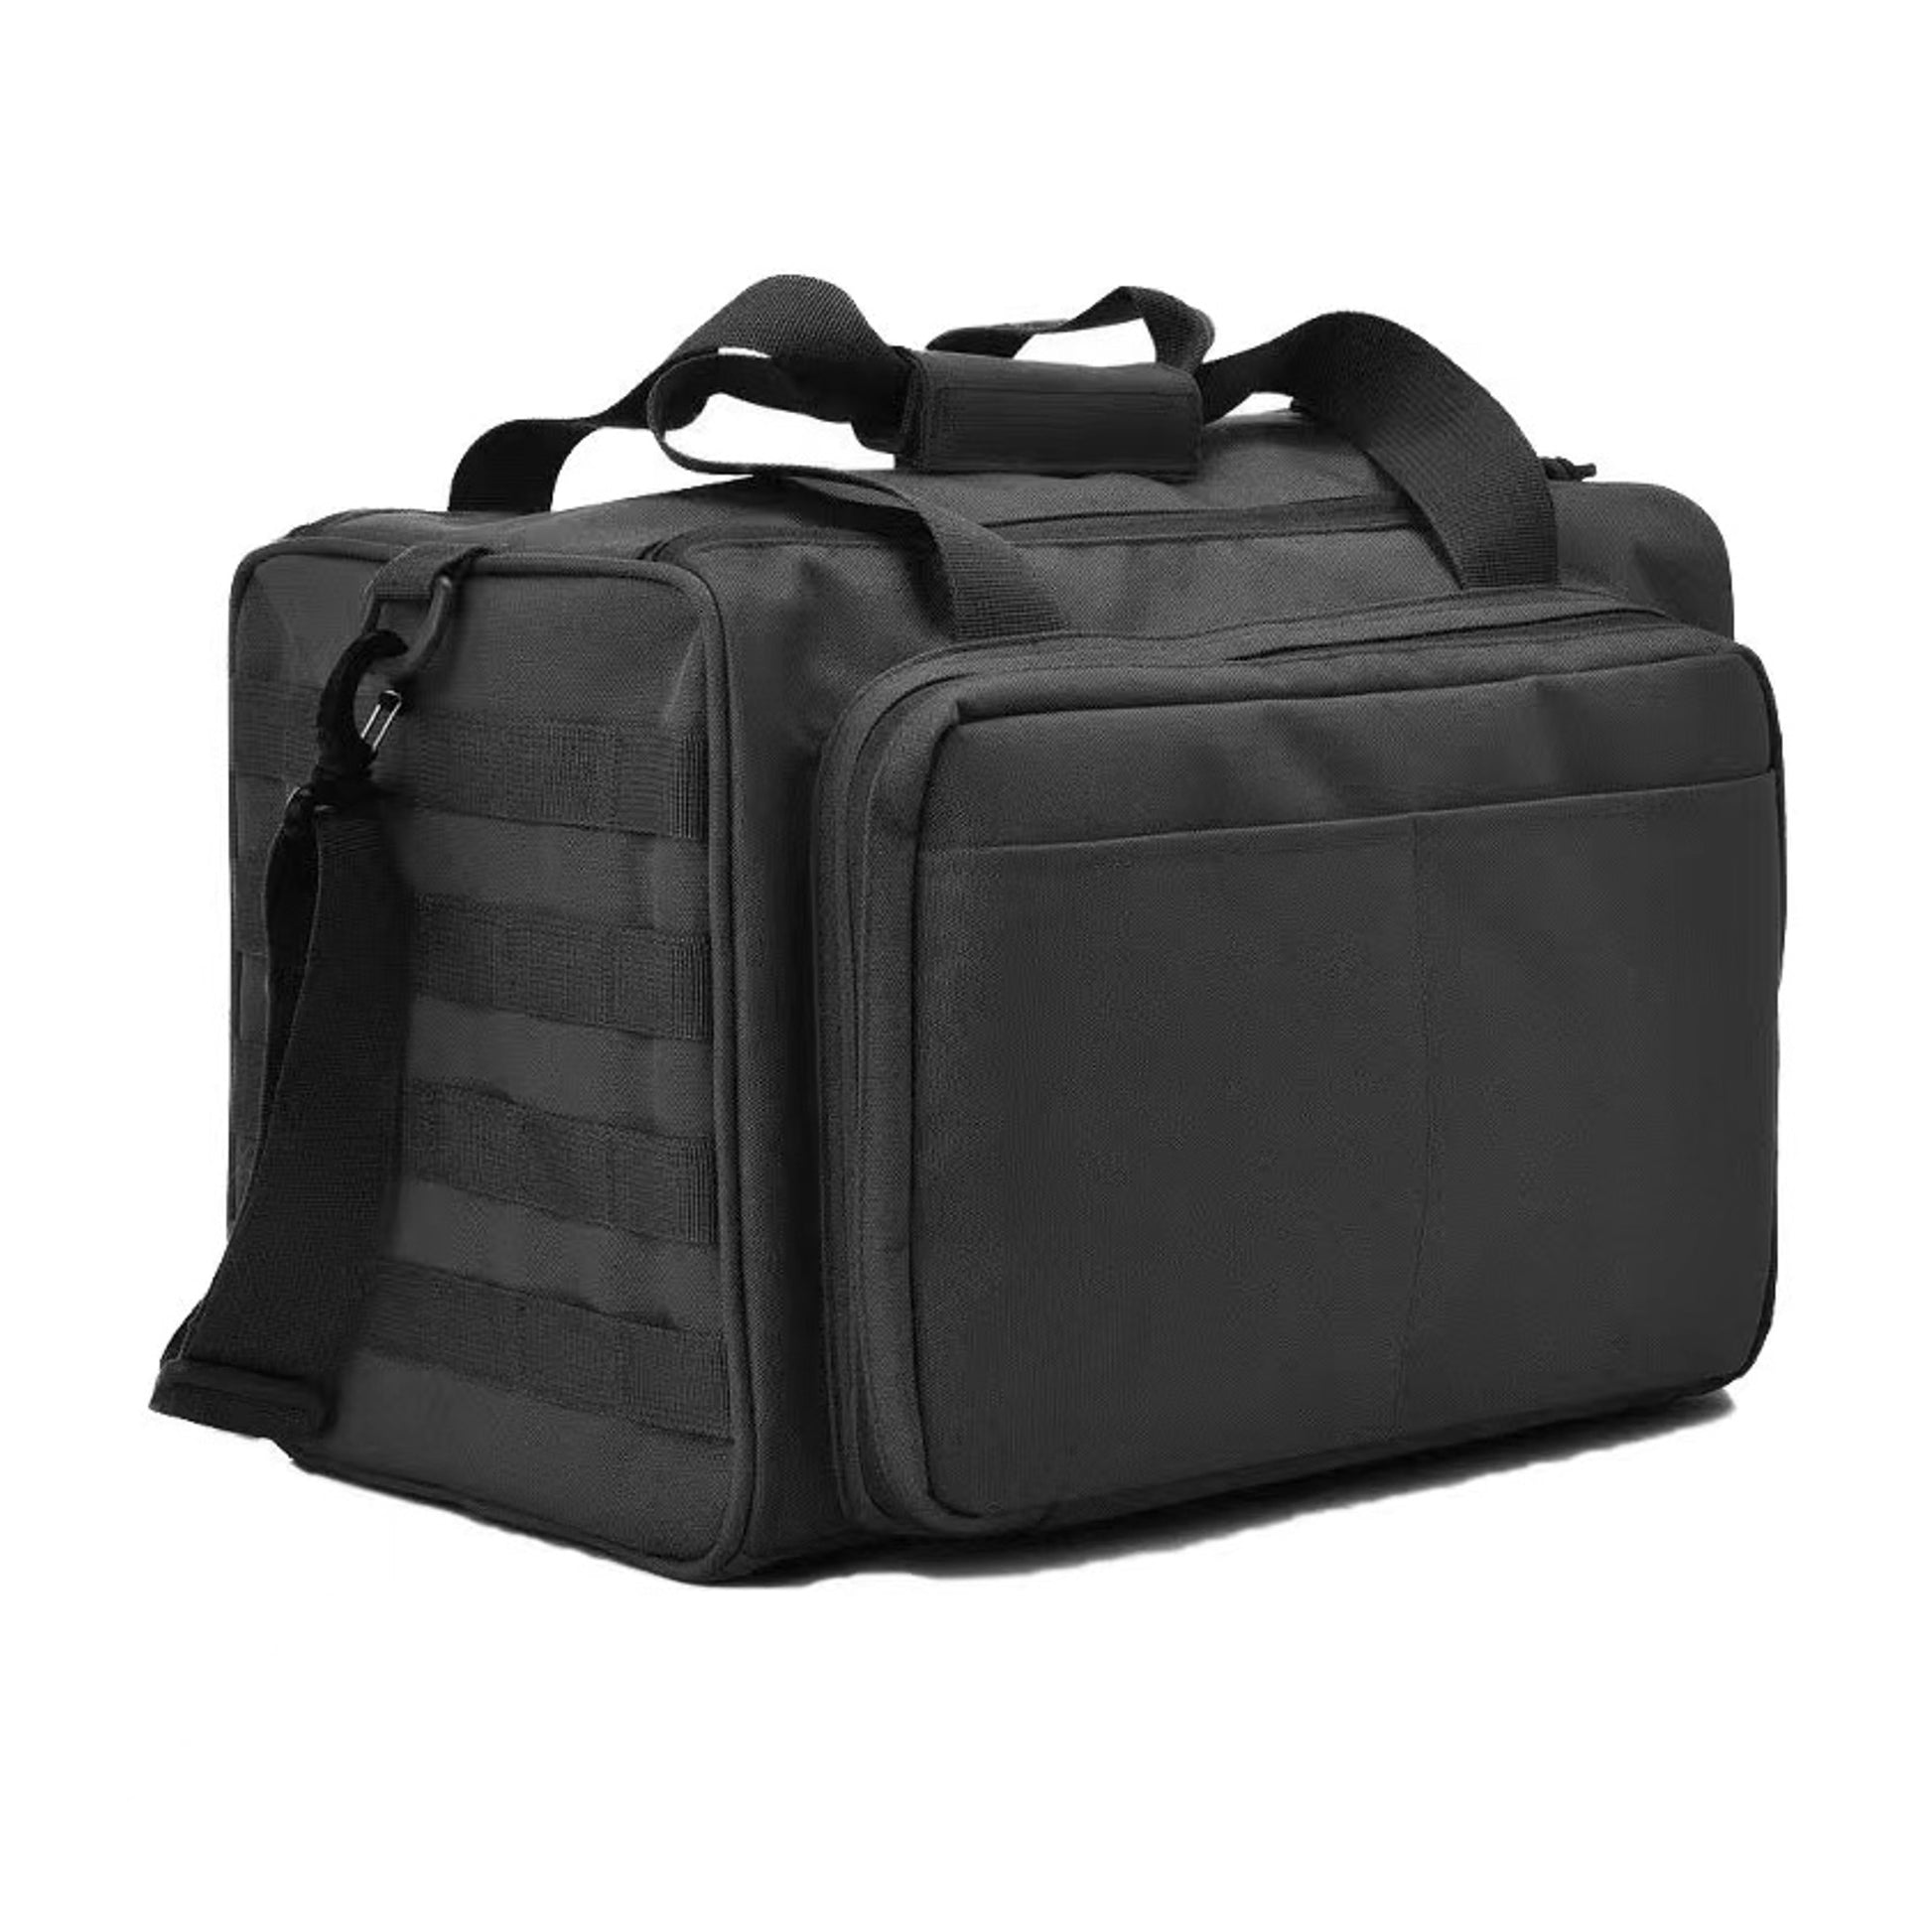 IJ Tactical Range Bag Black